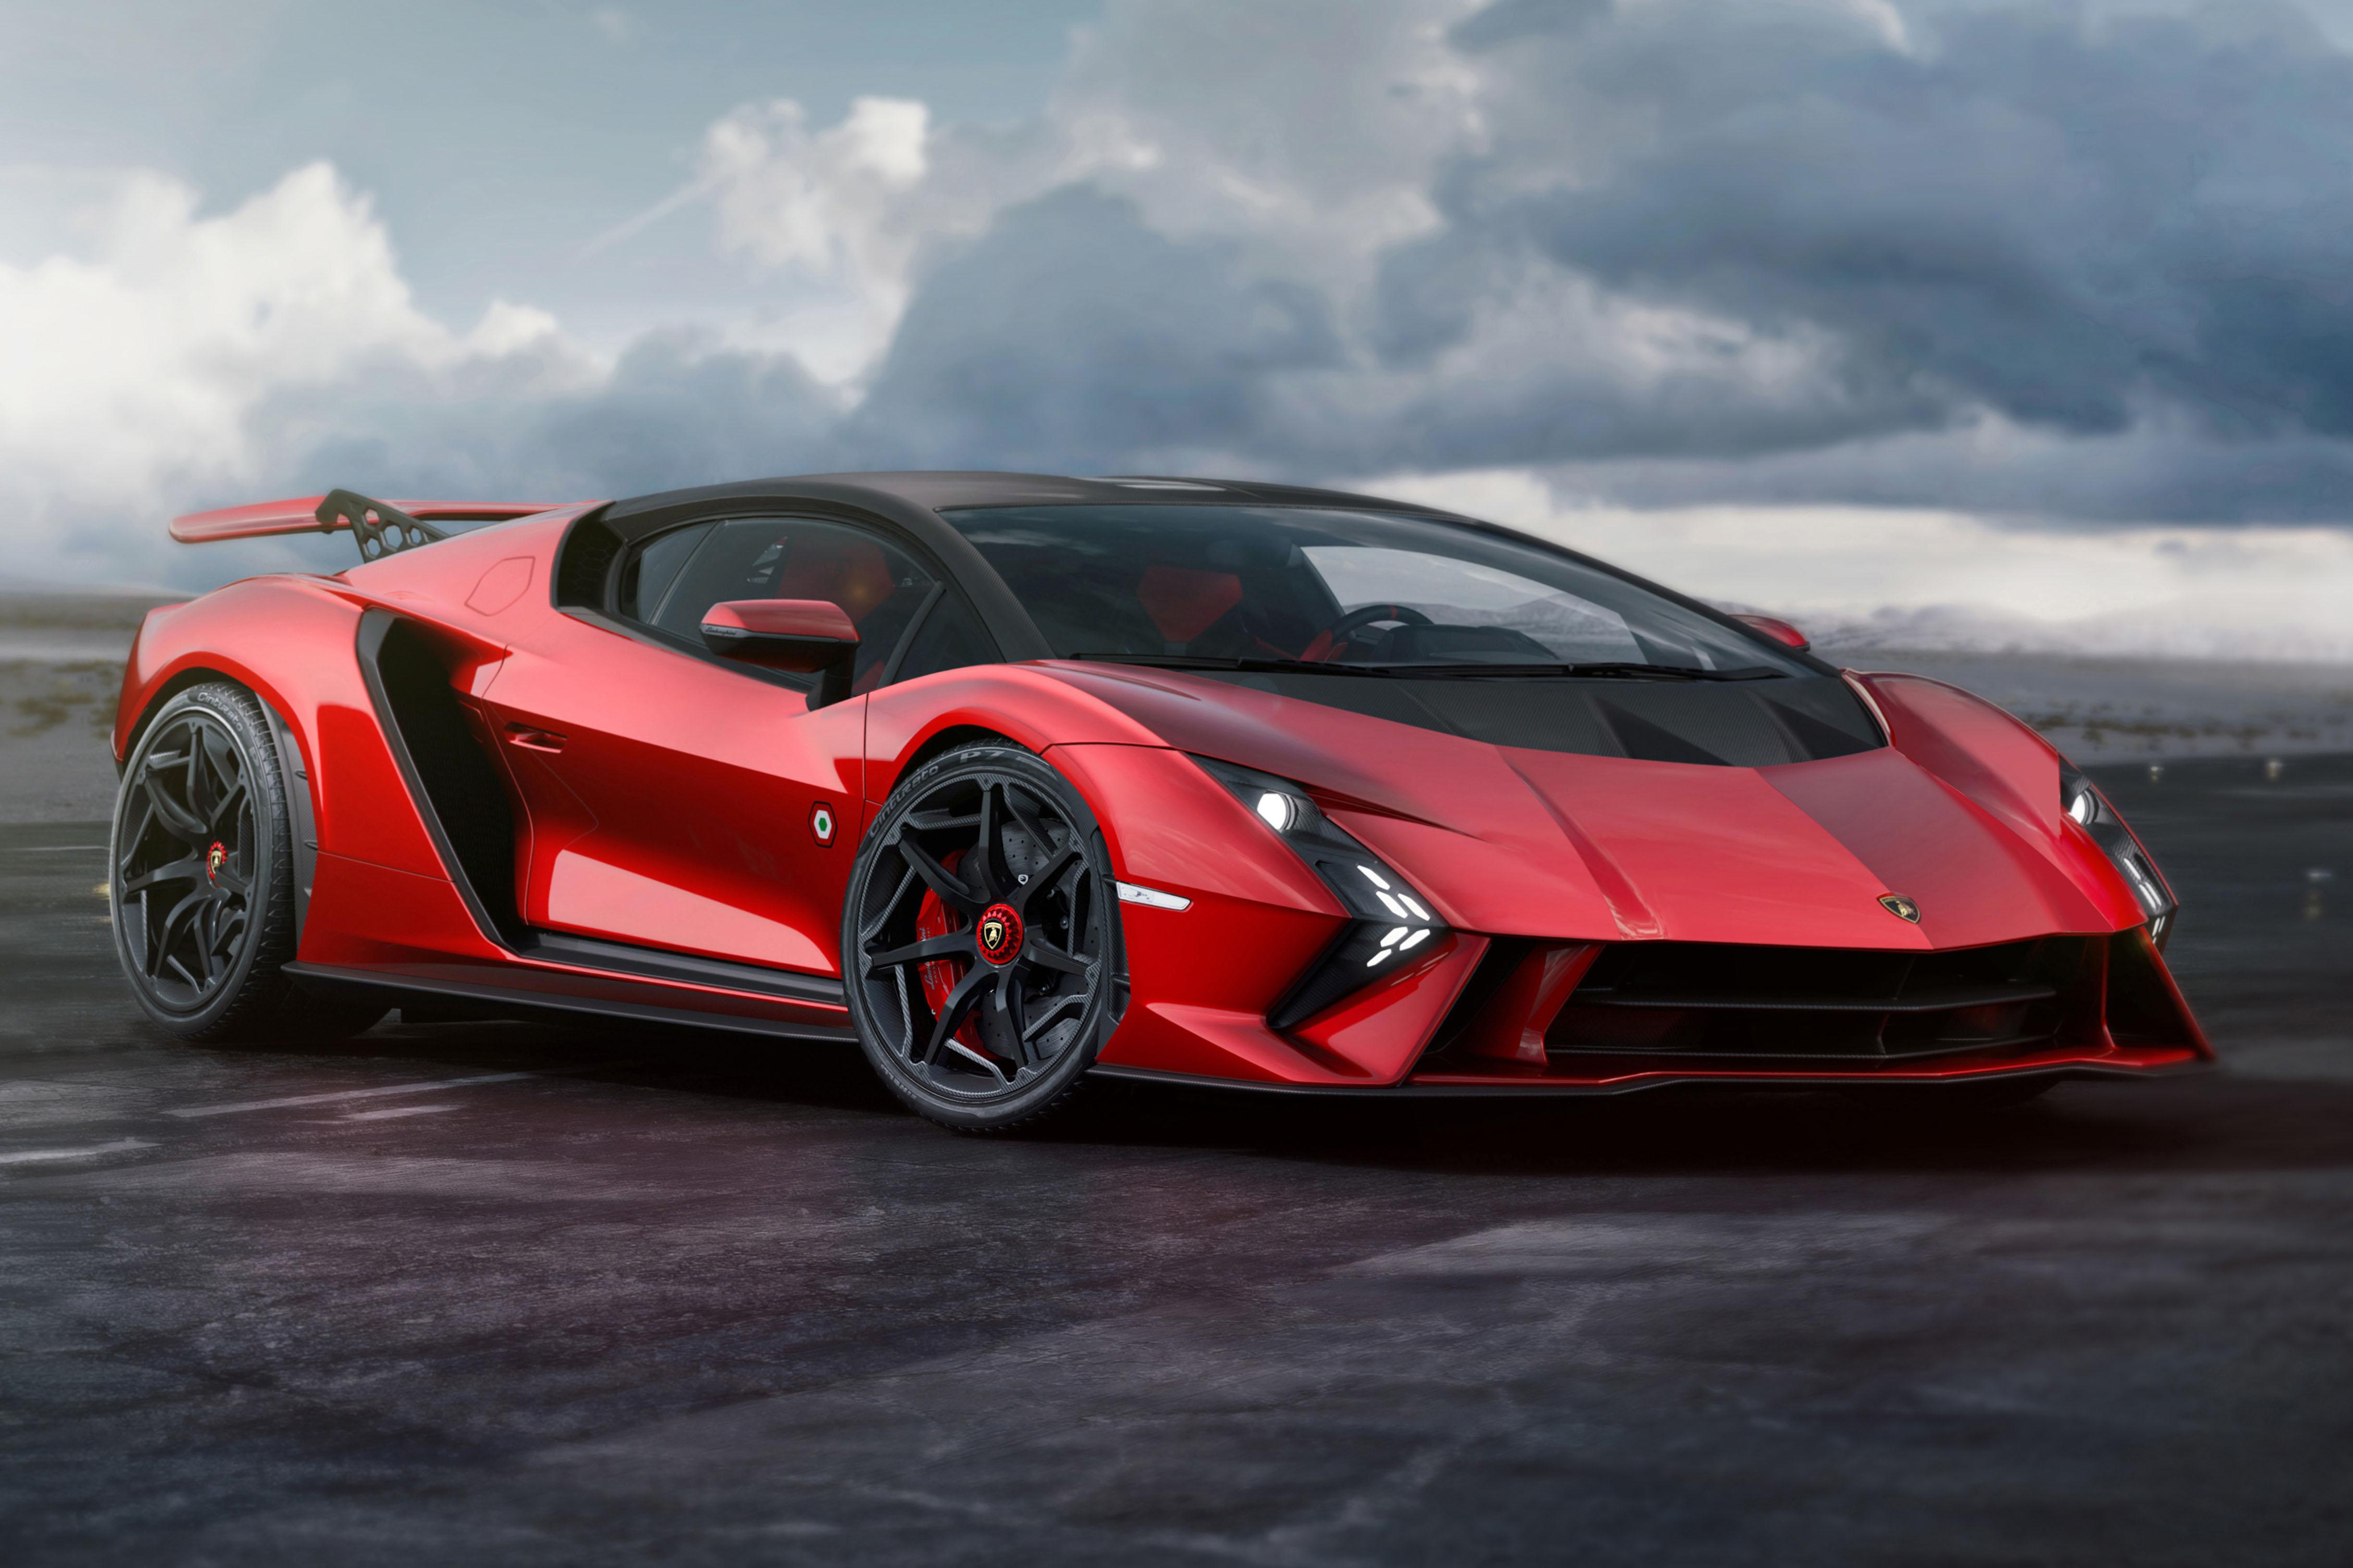 Lamborghini Invencible and Auténtica: Final non-hybrid V12s unveiled |  CarExpert